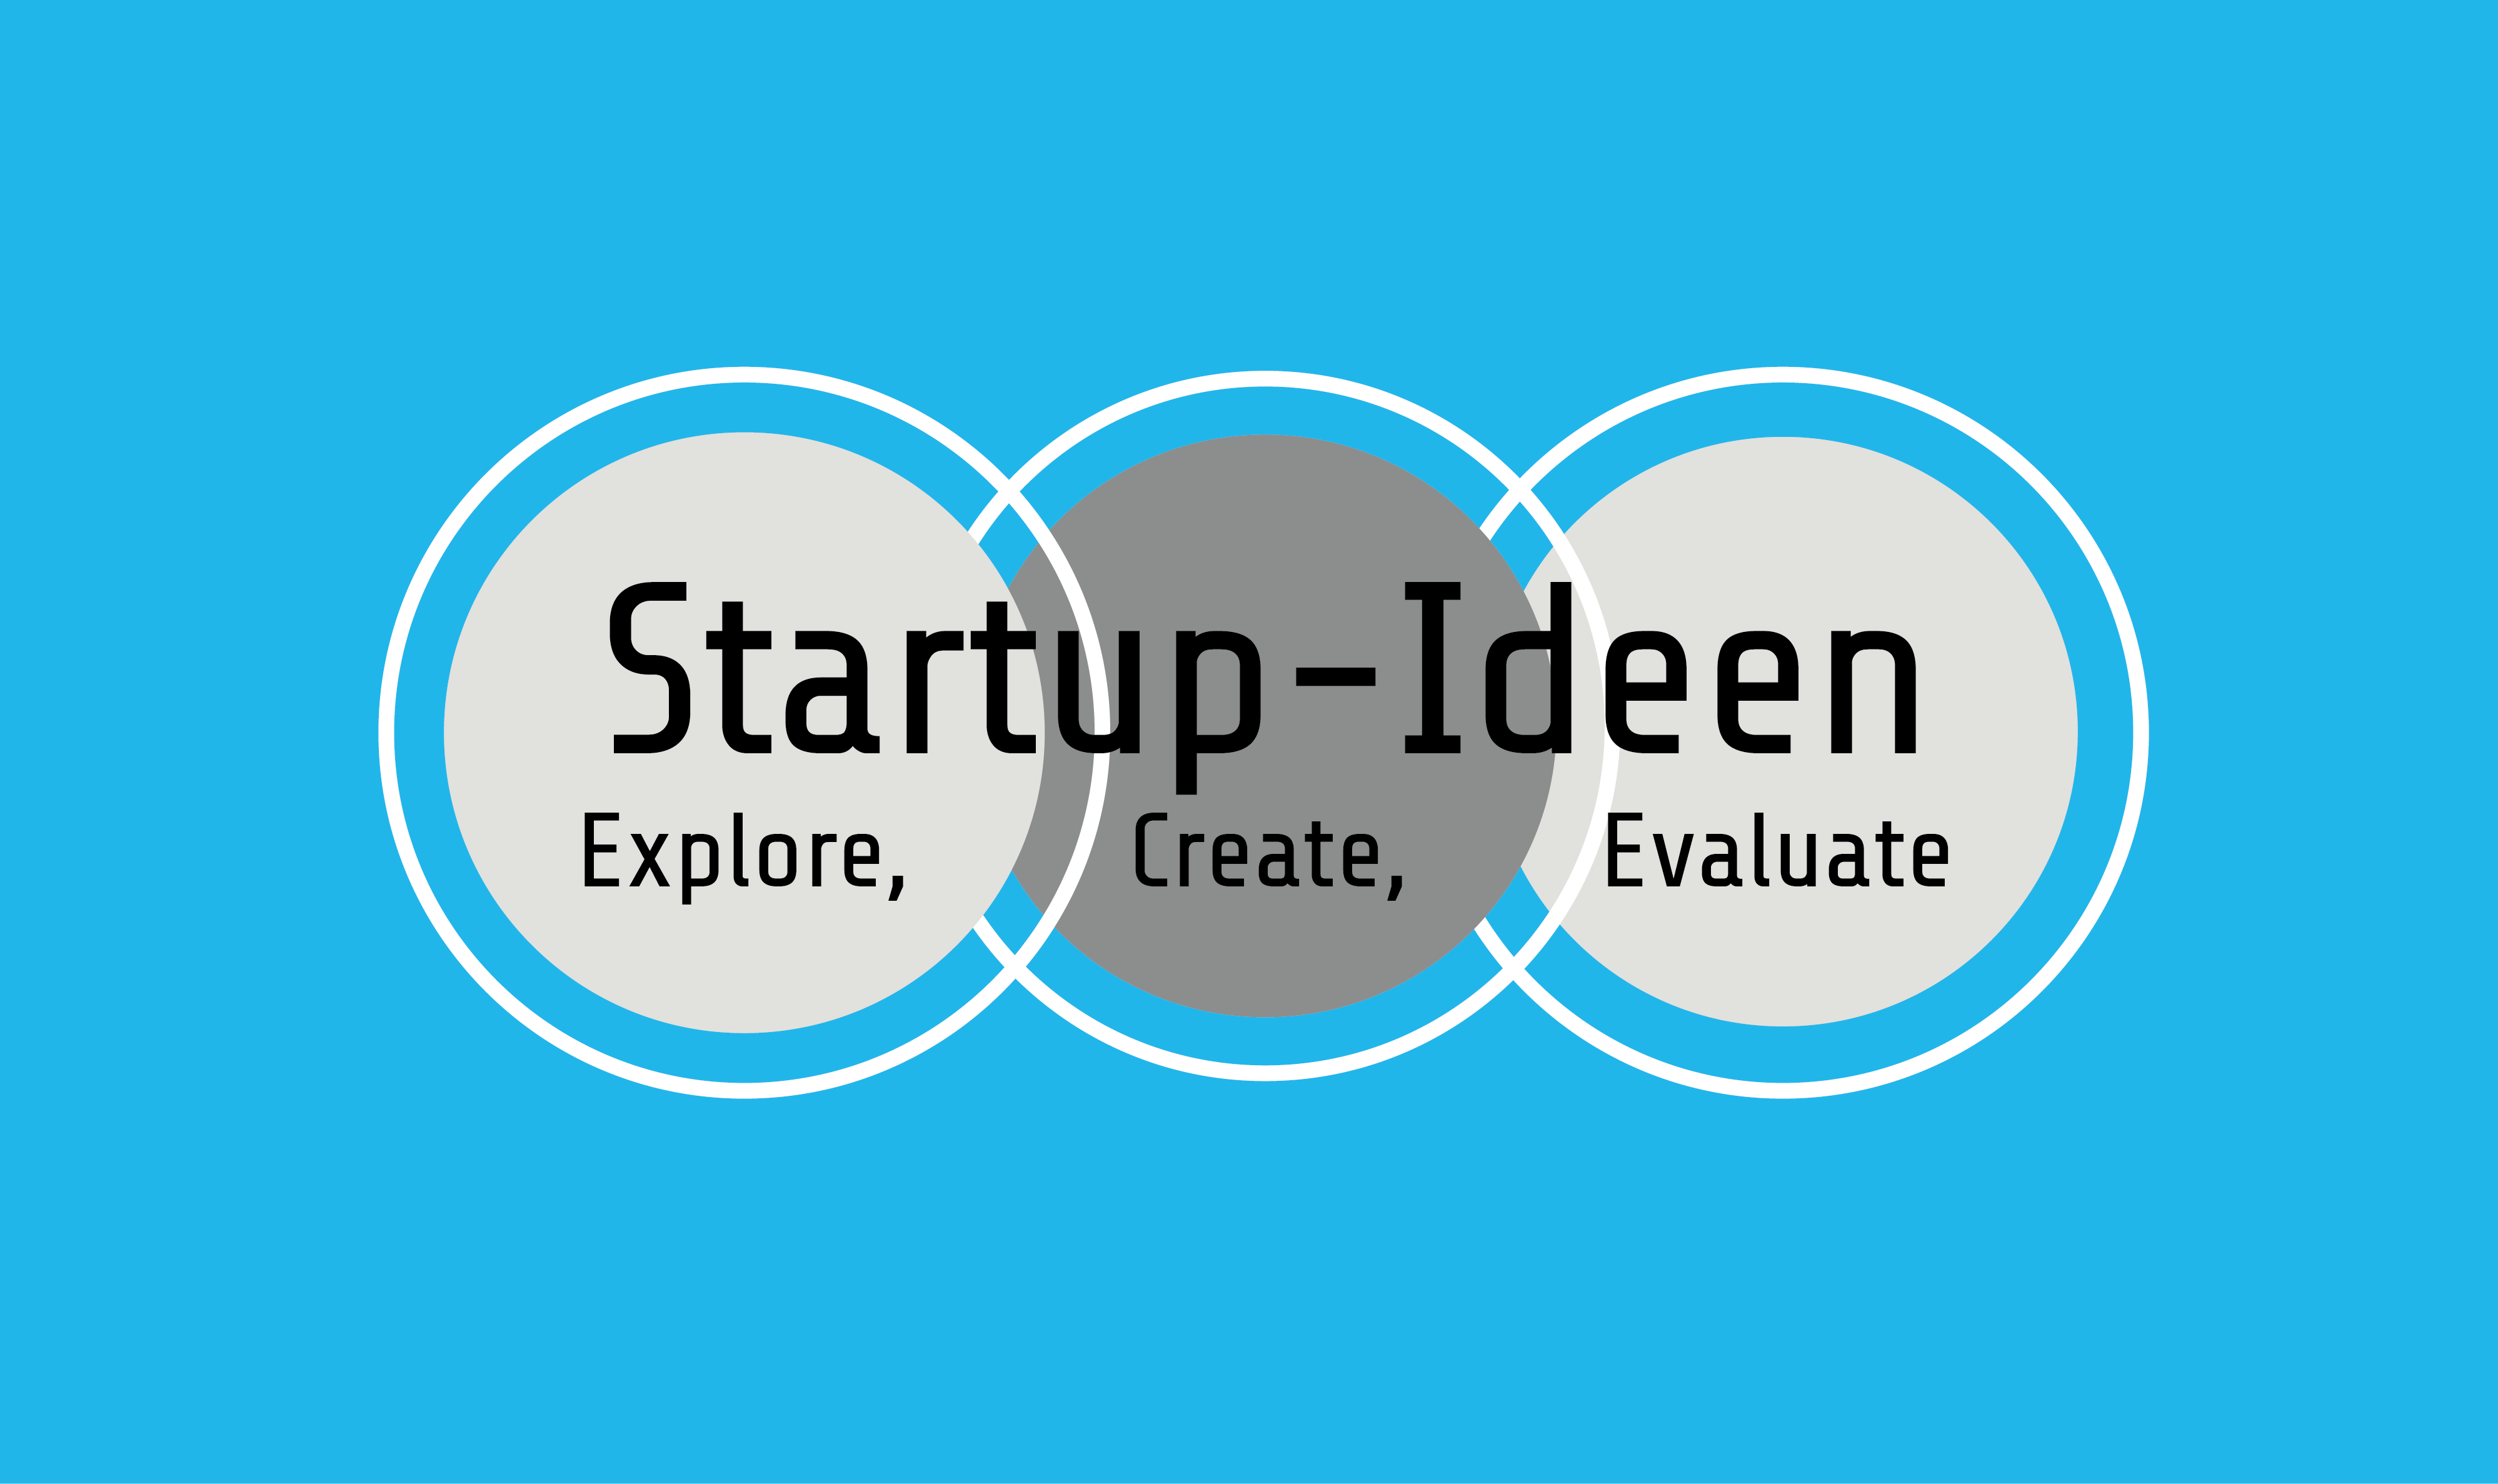 Workshop - Startup - Ideen